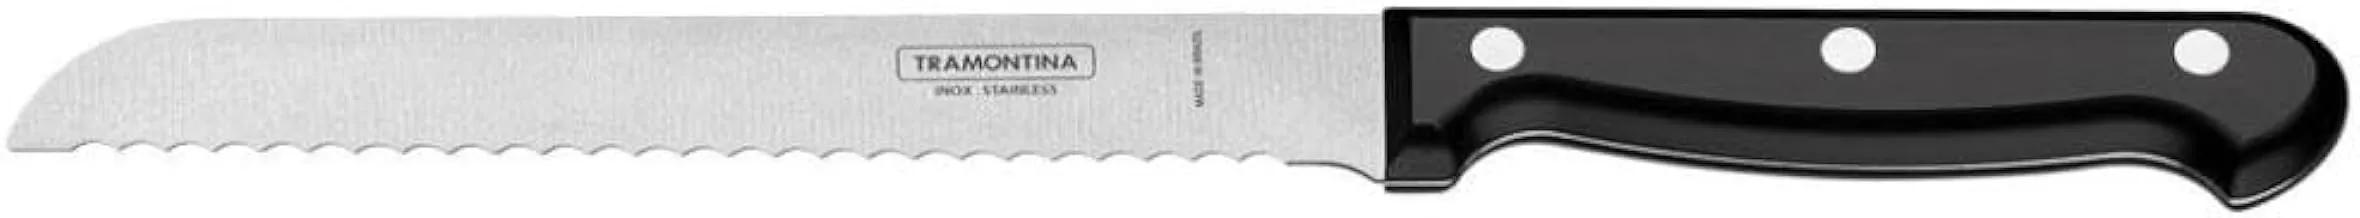 ترامونتينا - سكين خبز 7 انش التراكورتي - مقبض مضاد للبكتيريا ، 23859 / 107_أسود